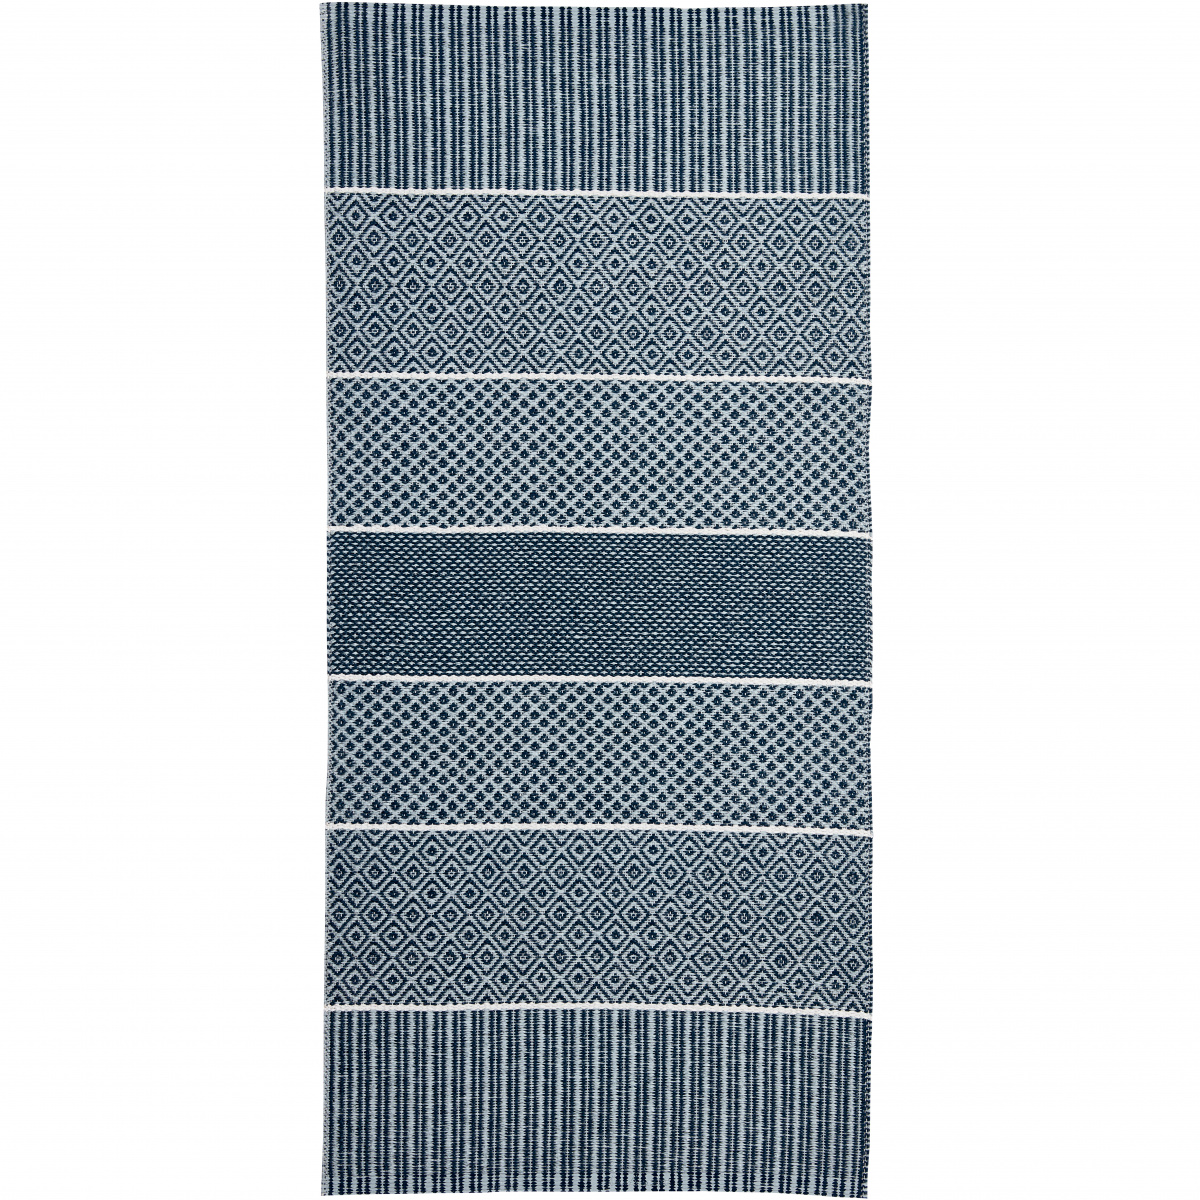 Horredsmattan Outdoor-Teppich - Alfie blau, 70x150